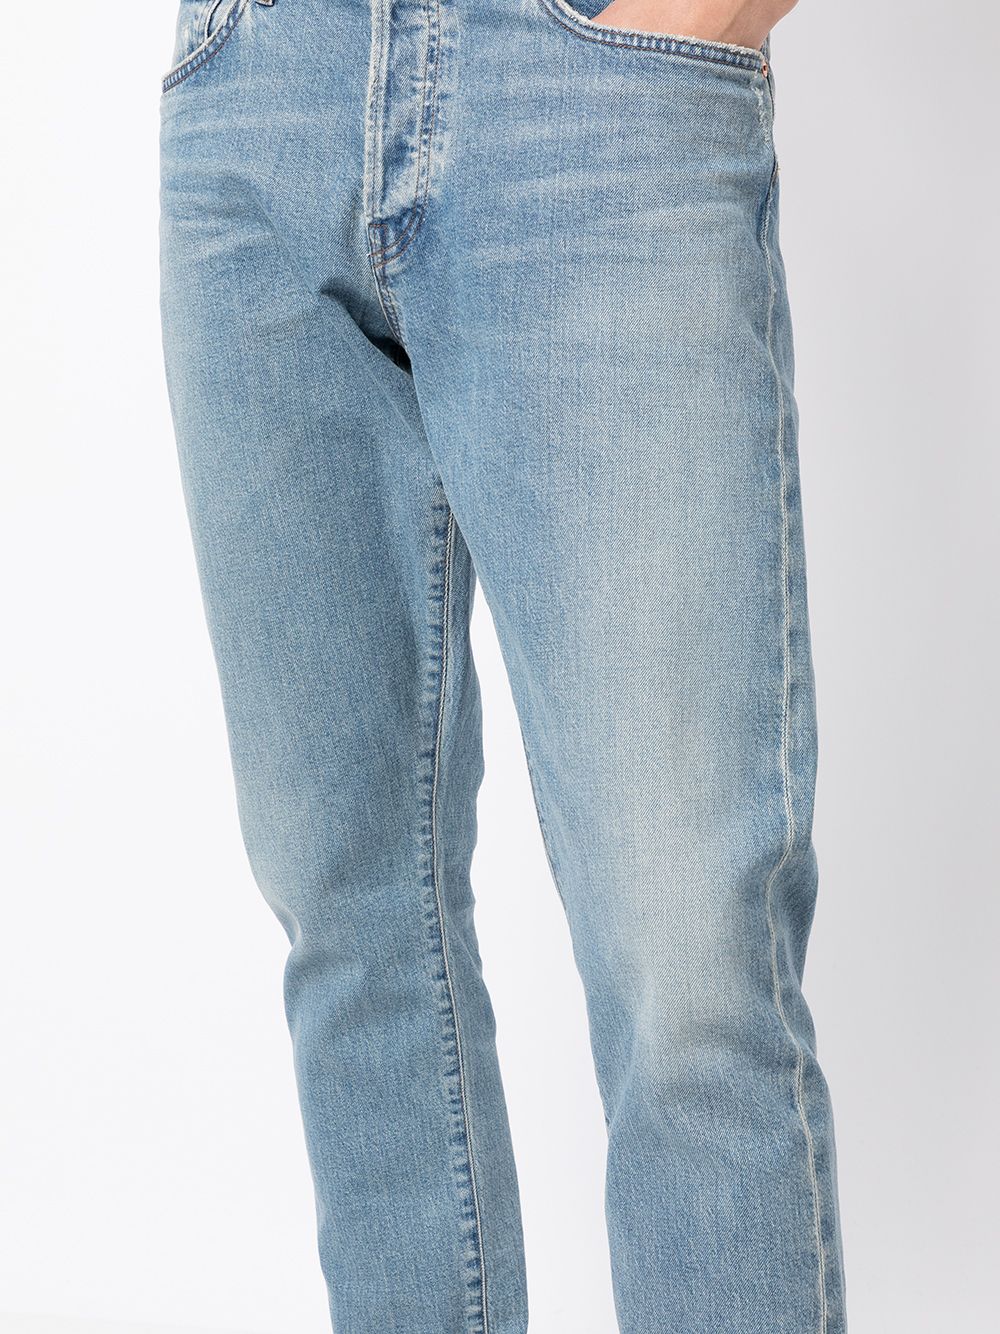 фото Citizens of humanity зауженные джинсы кроя слим